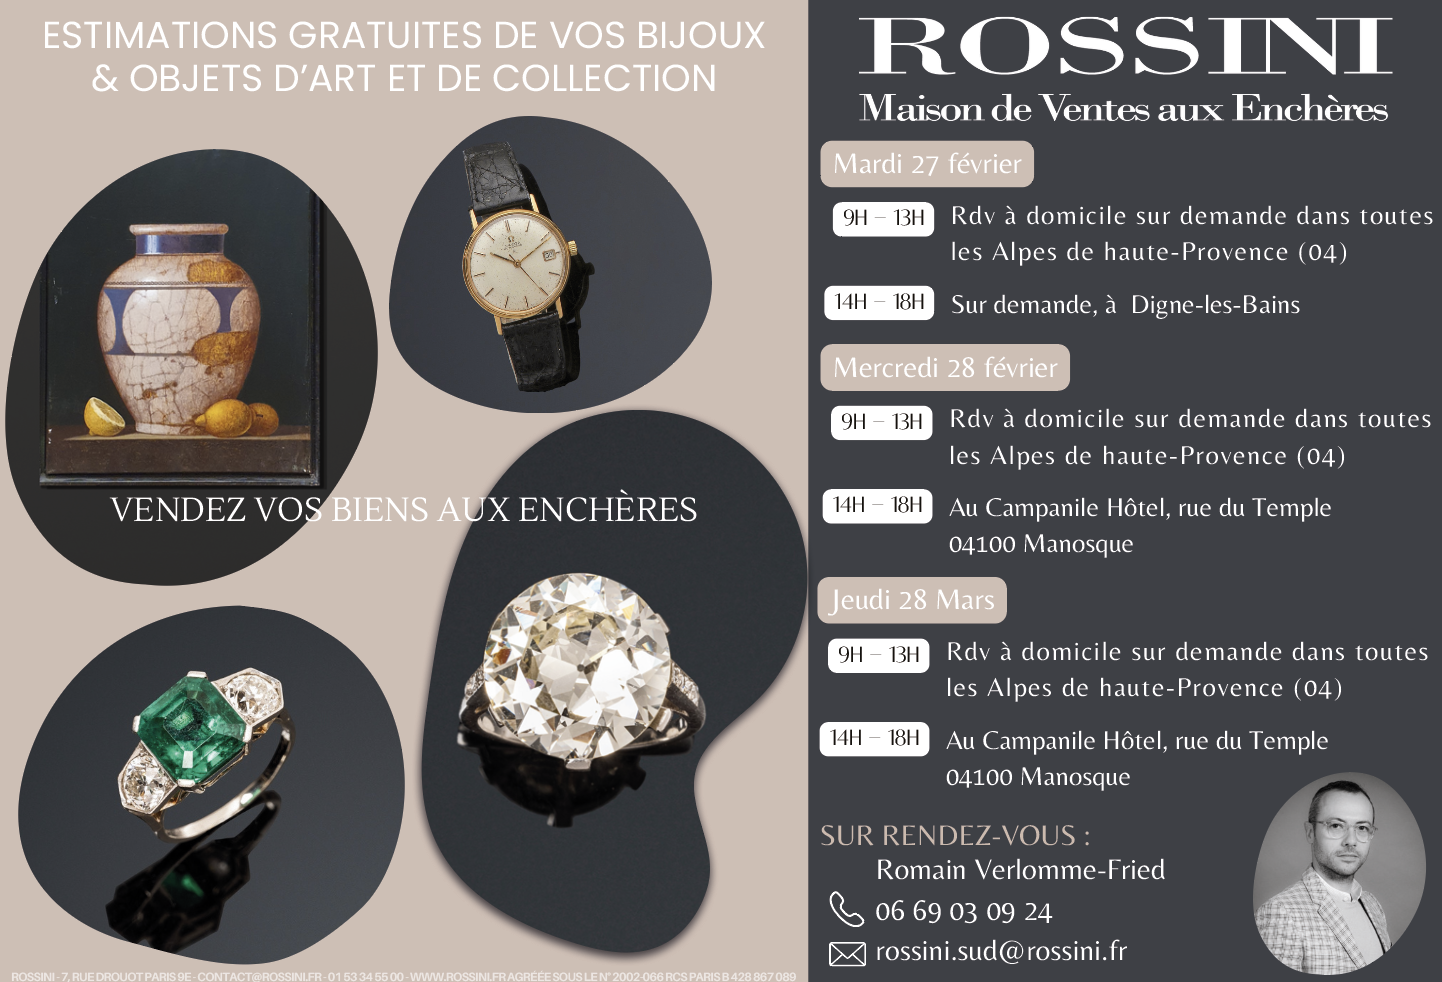 Faites estimer vos bijoux, objets, collections gratuitement par la maison Rossini